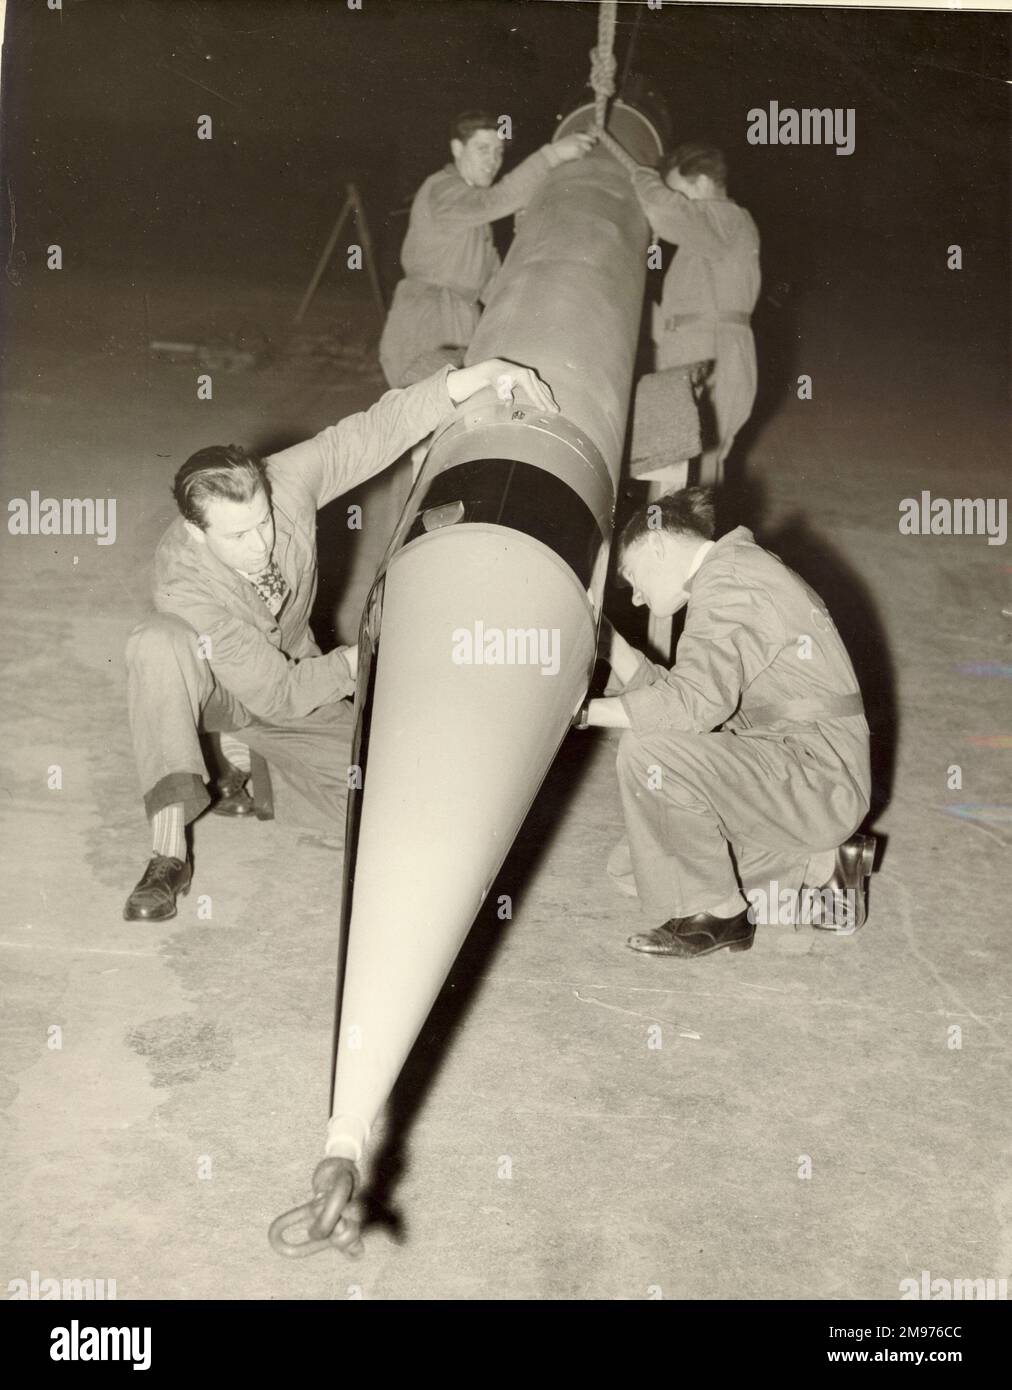 La fusée Skylark est en train d'être réprésentée pour la première fois au public lors de l'exposition Factory Equipment à Earls court, Londres, avril 1958. Banque D'Images